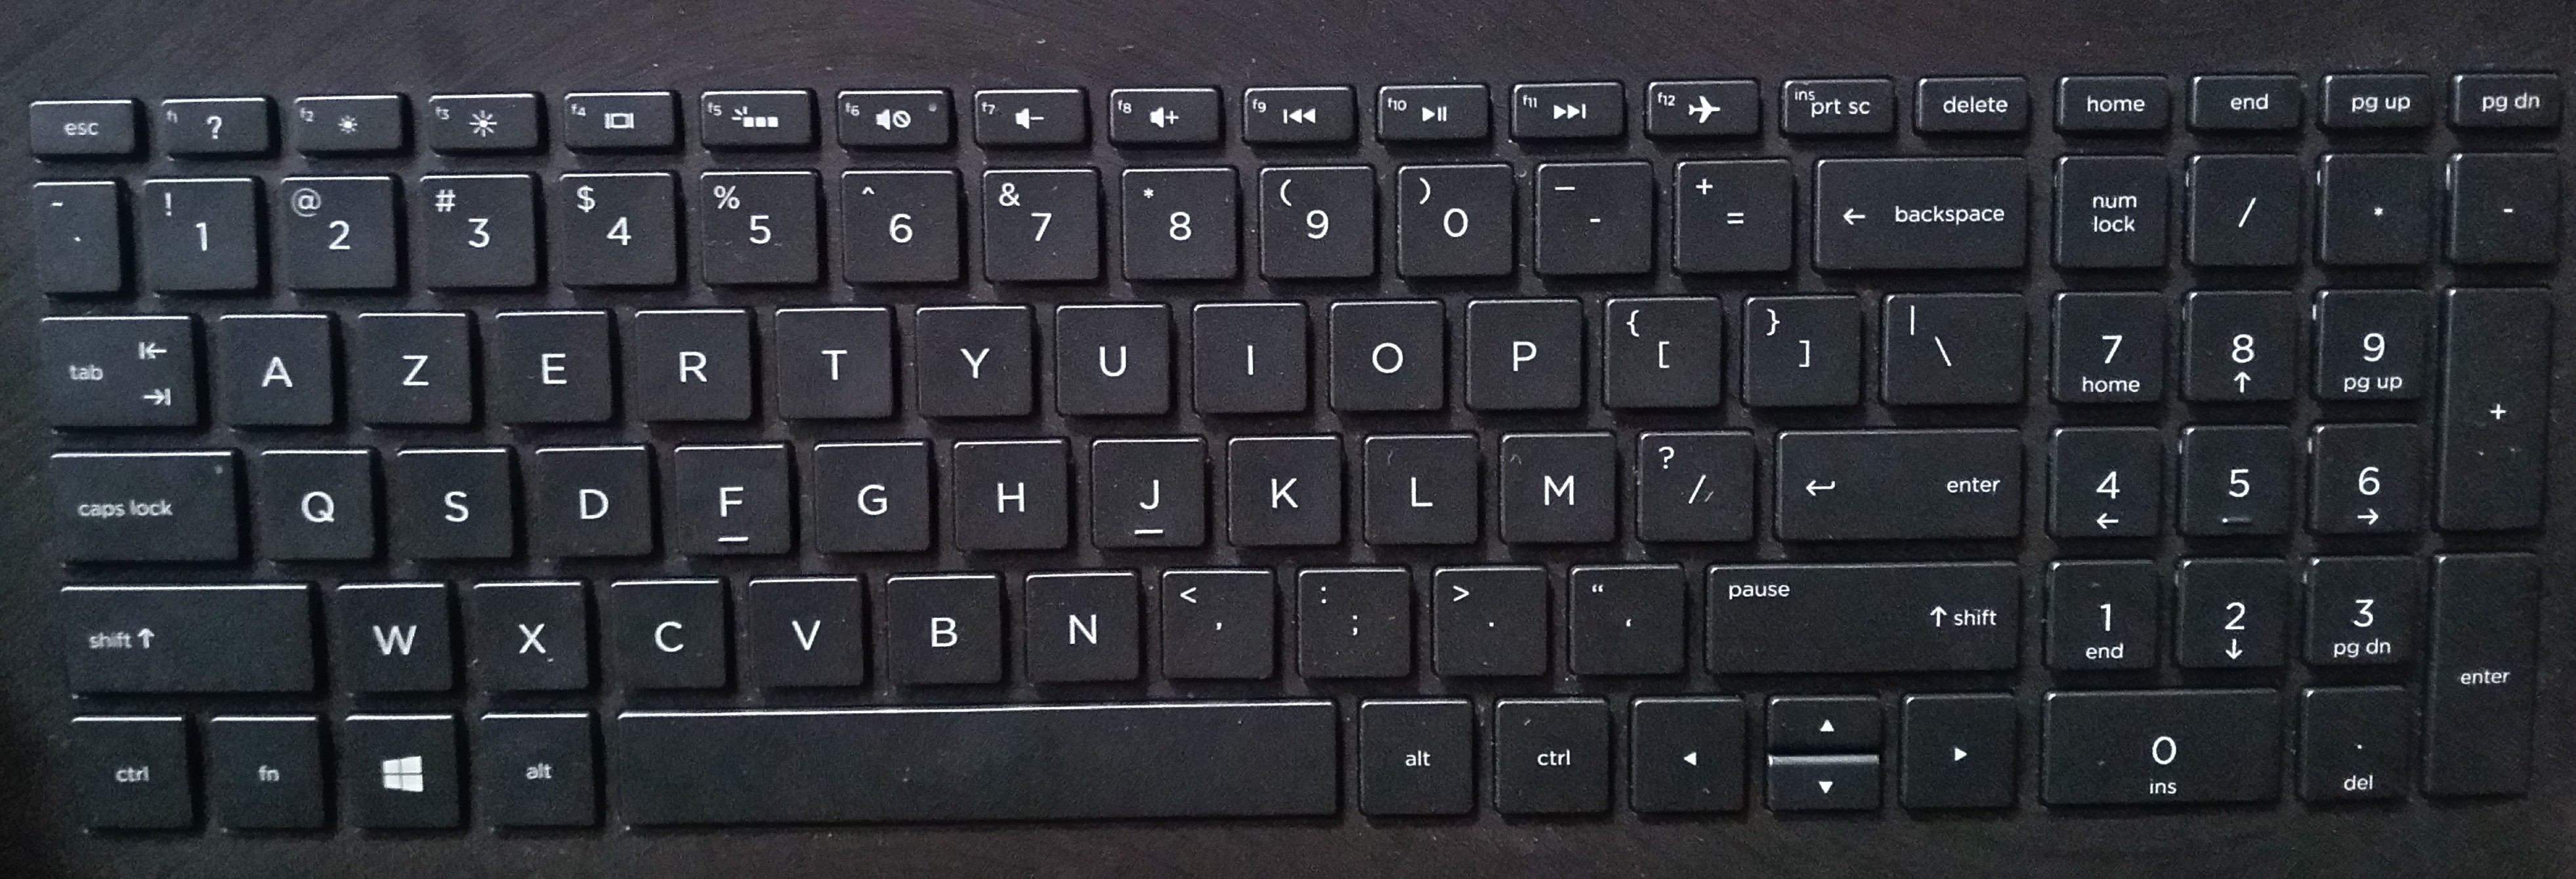 Laptop Keyboard Layout Printable